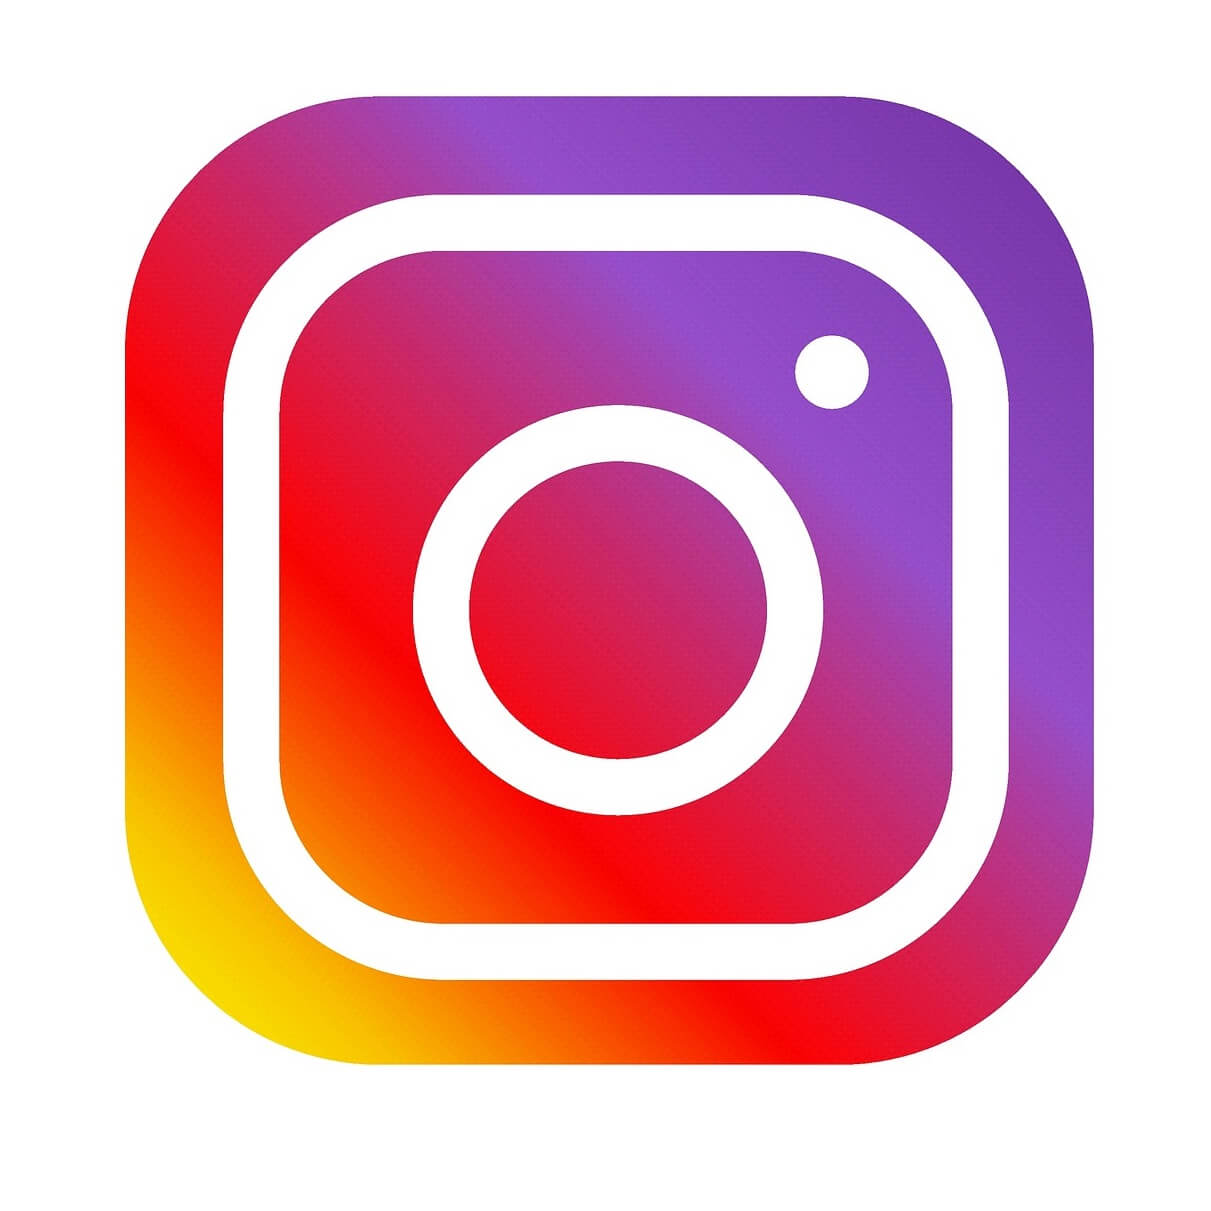 Instagram जल्द ही ऐड करने जा रहा है Thread फीचर, इसकी खासियत जानकर खुश हो जाएंगे आप, पढ़े पूरी रिपोर्ट